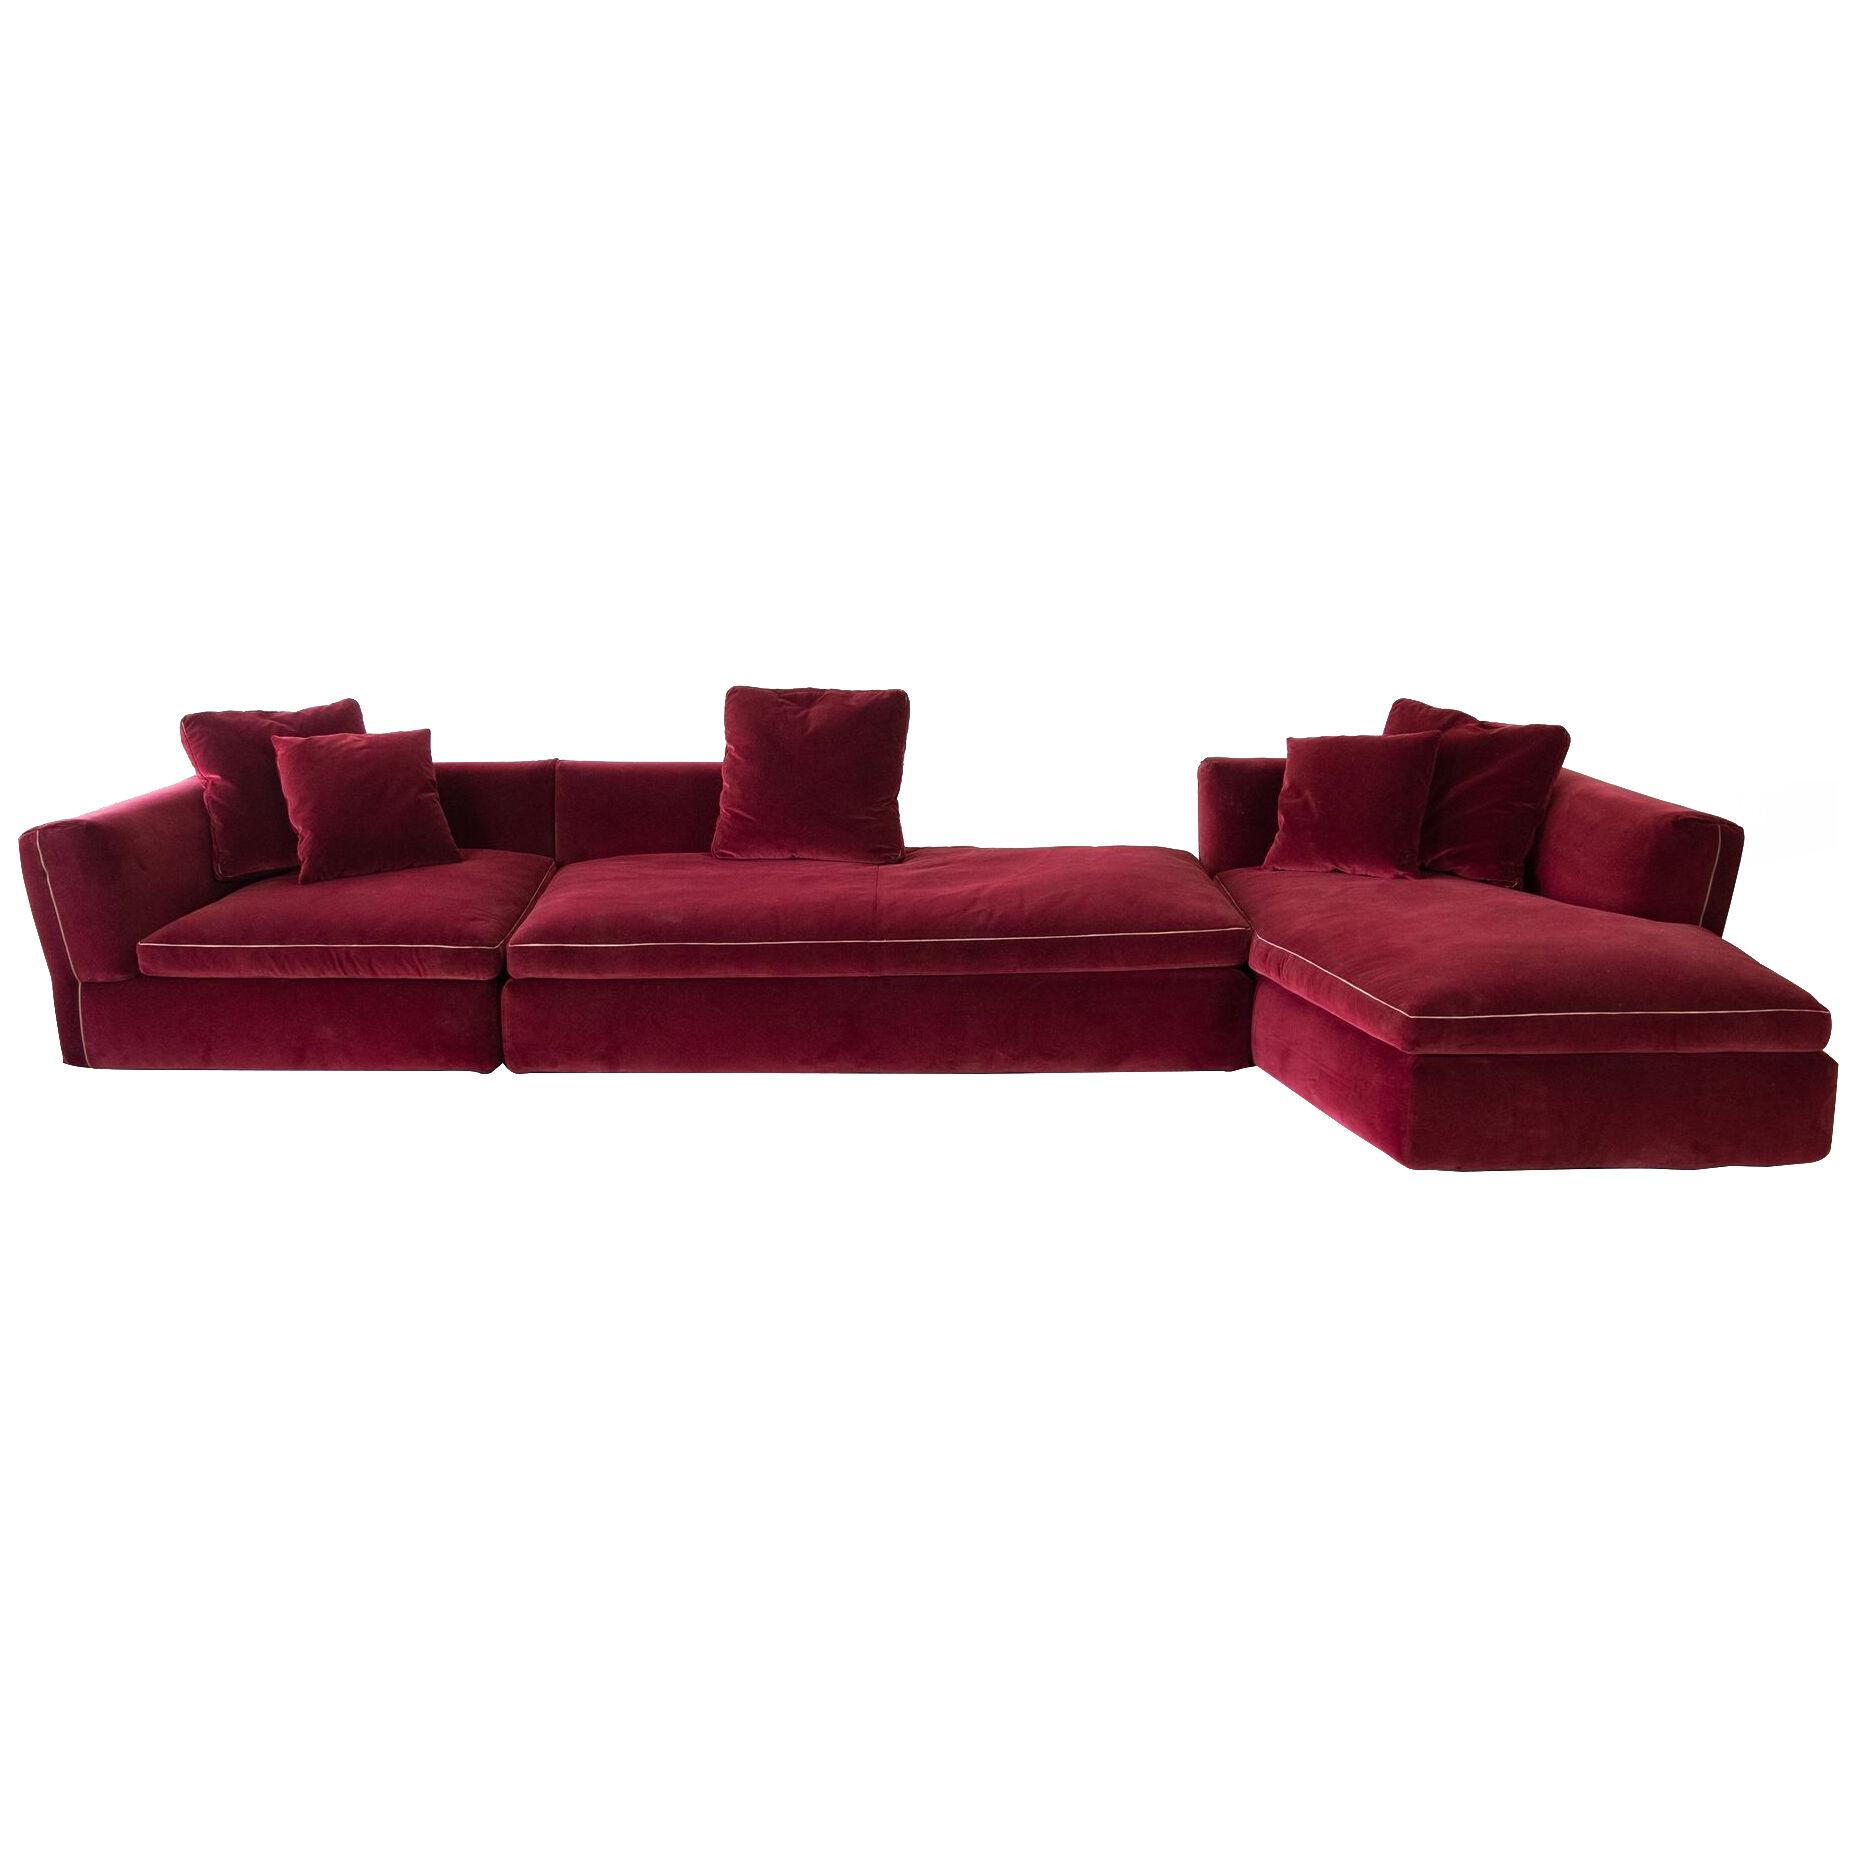 Velvet 'Dress-Up' Sectional Sofa Designed by Rodolfo Dordoni for Cassina